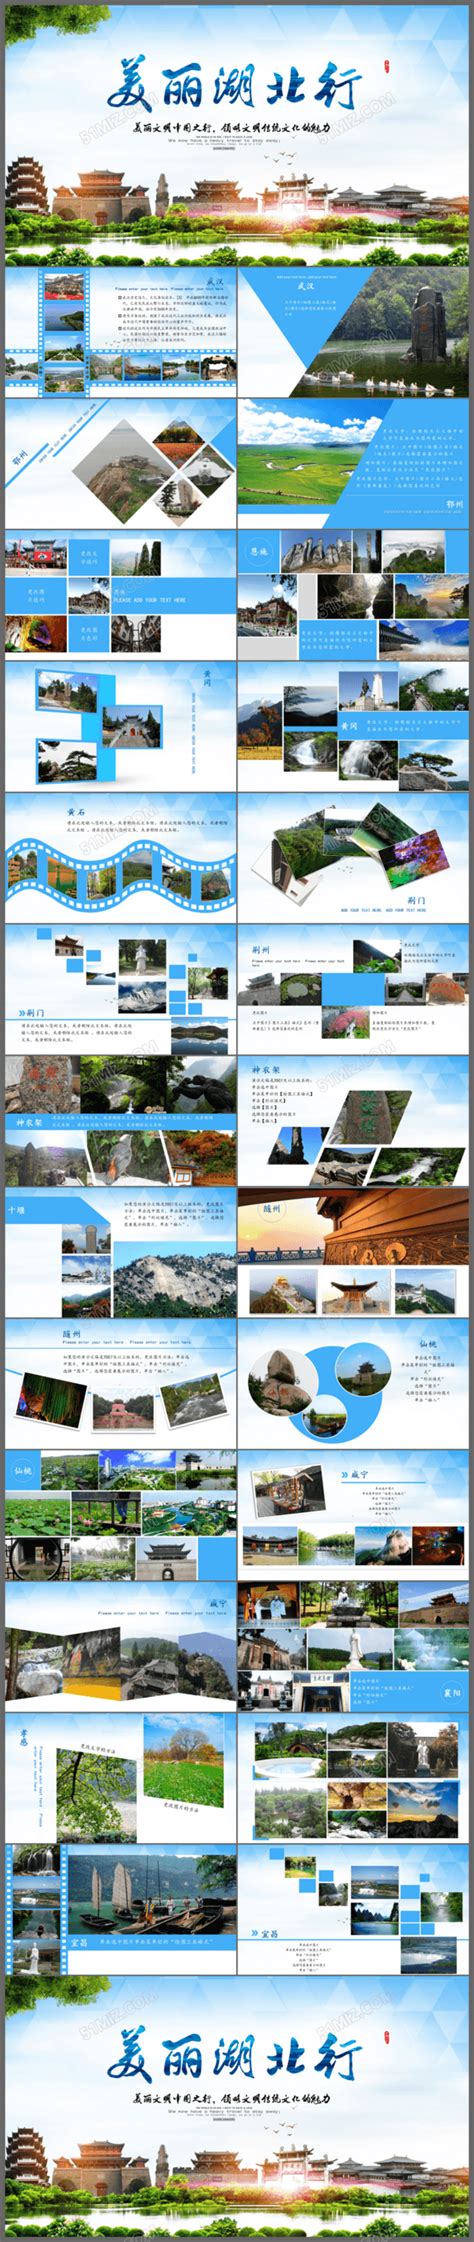 旅行社网站模板-旅行社网站制作-旅游网站设计-够完美